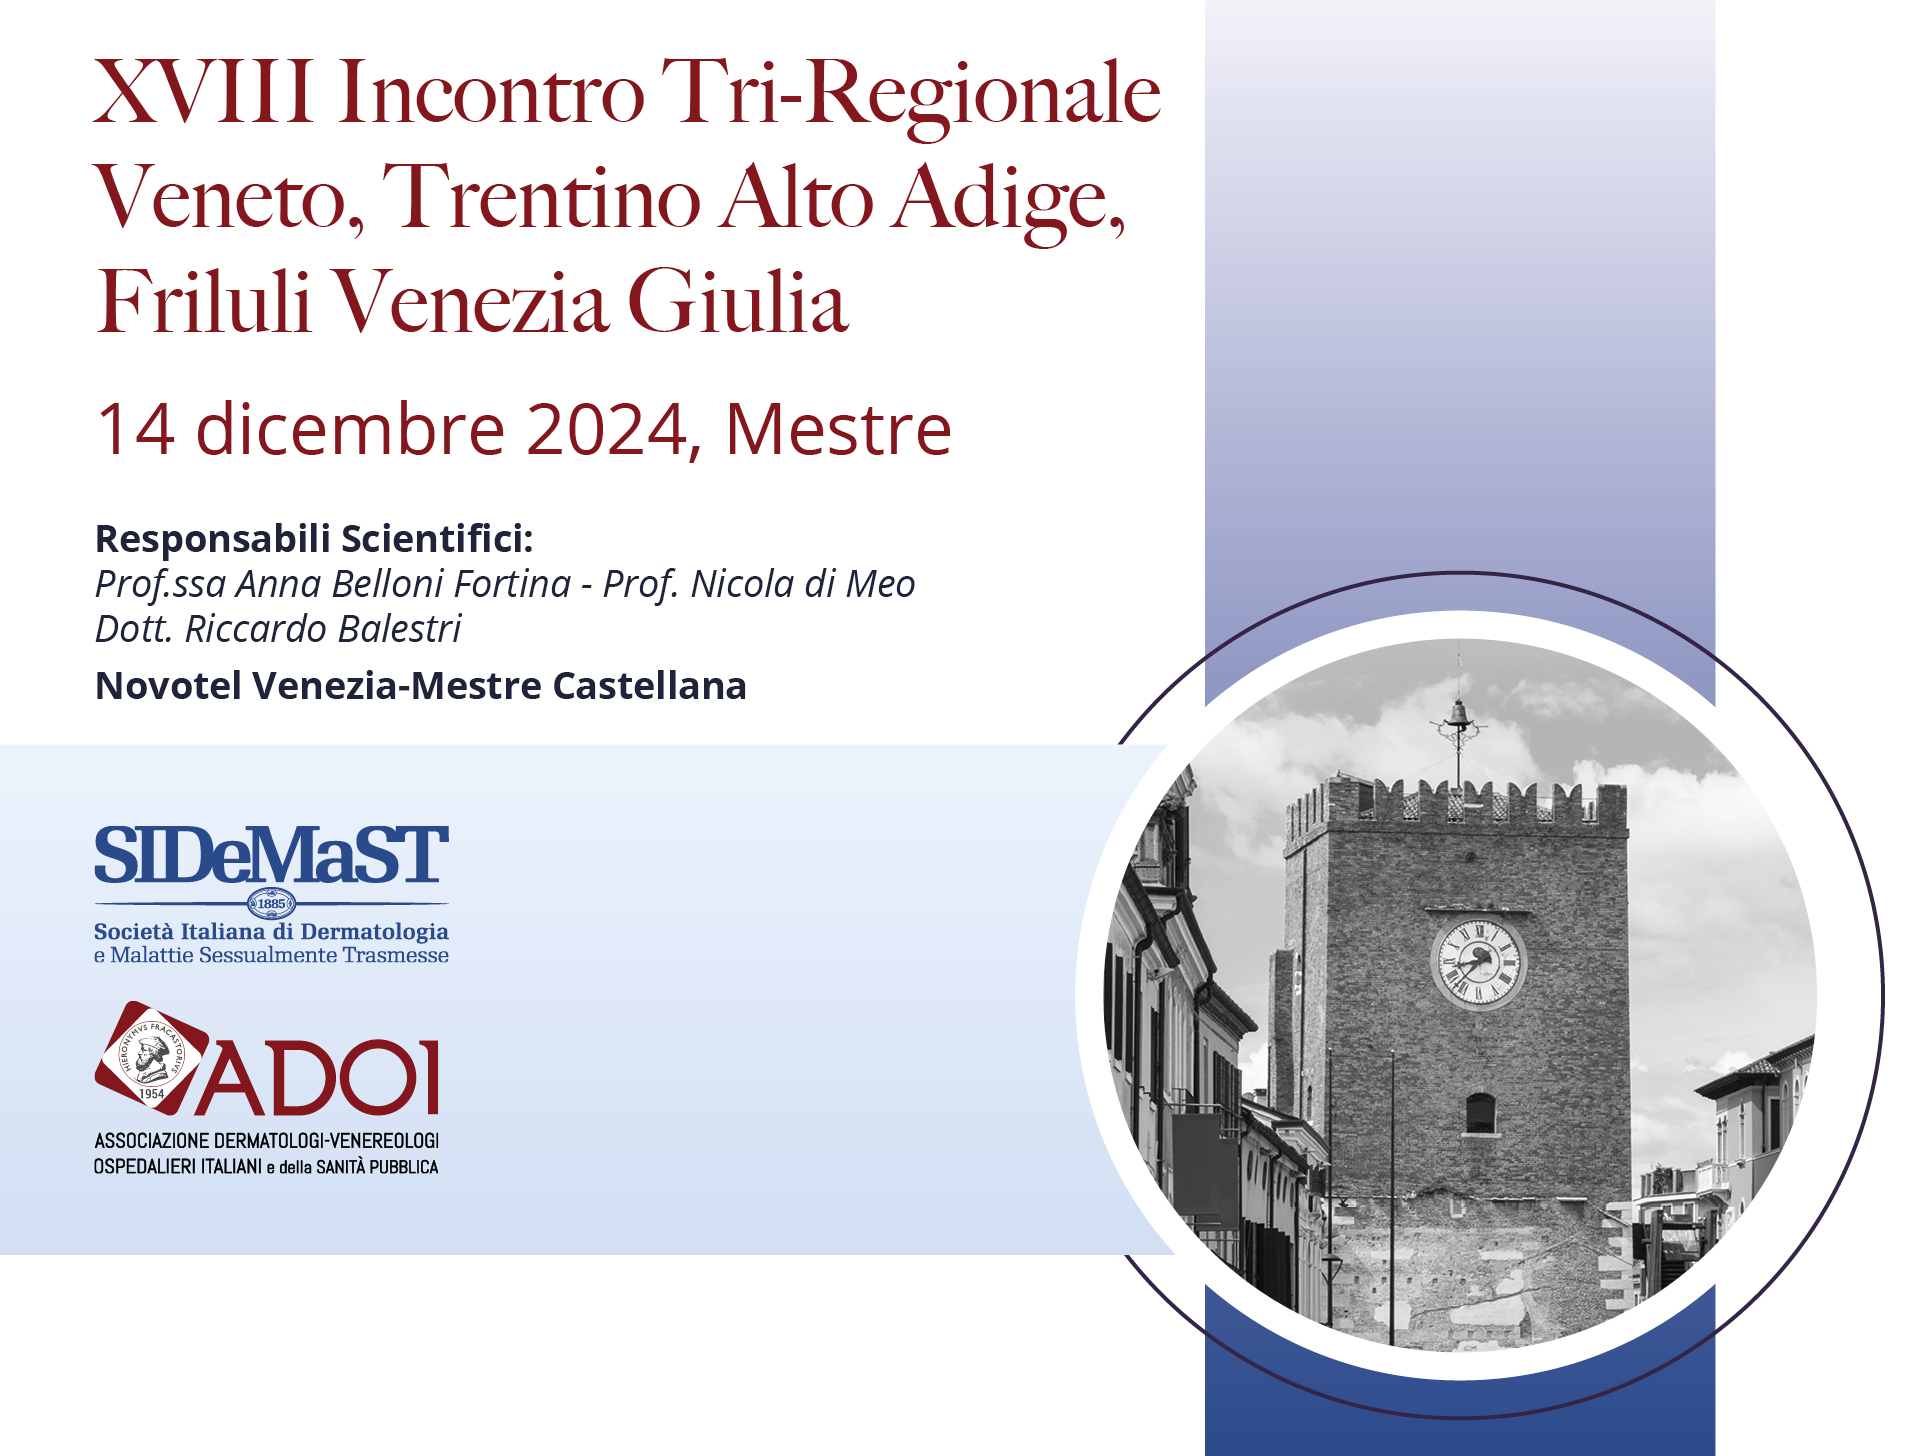 XVIII Incontro Tri-Regionale Veneto Trentino Alto Adige Friuli Venezia Giulia